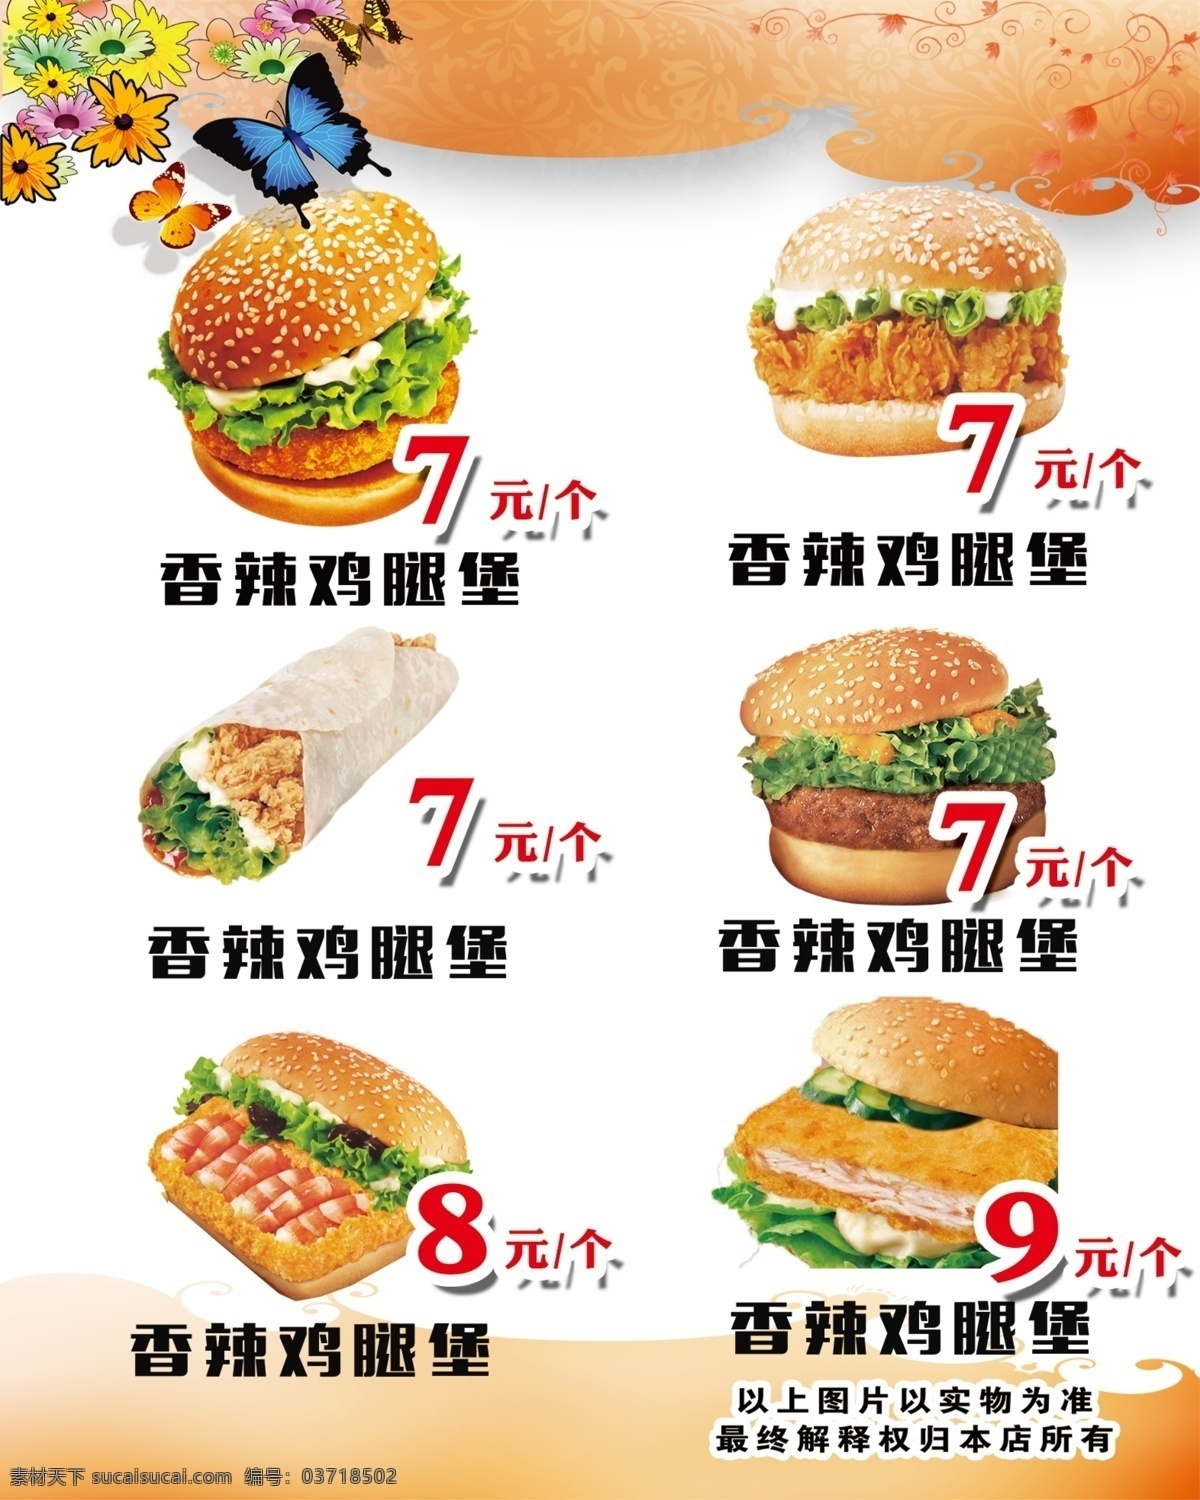 汉堡灯片 汉堡 灯片 汉堡海报 海报 香辣鸡腿堡 鸡肉卷 牛肉堡 七虾堡 鳕鱼堡 蟹黄堡 餐饮